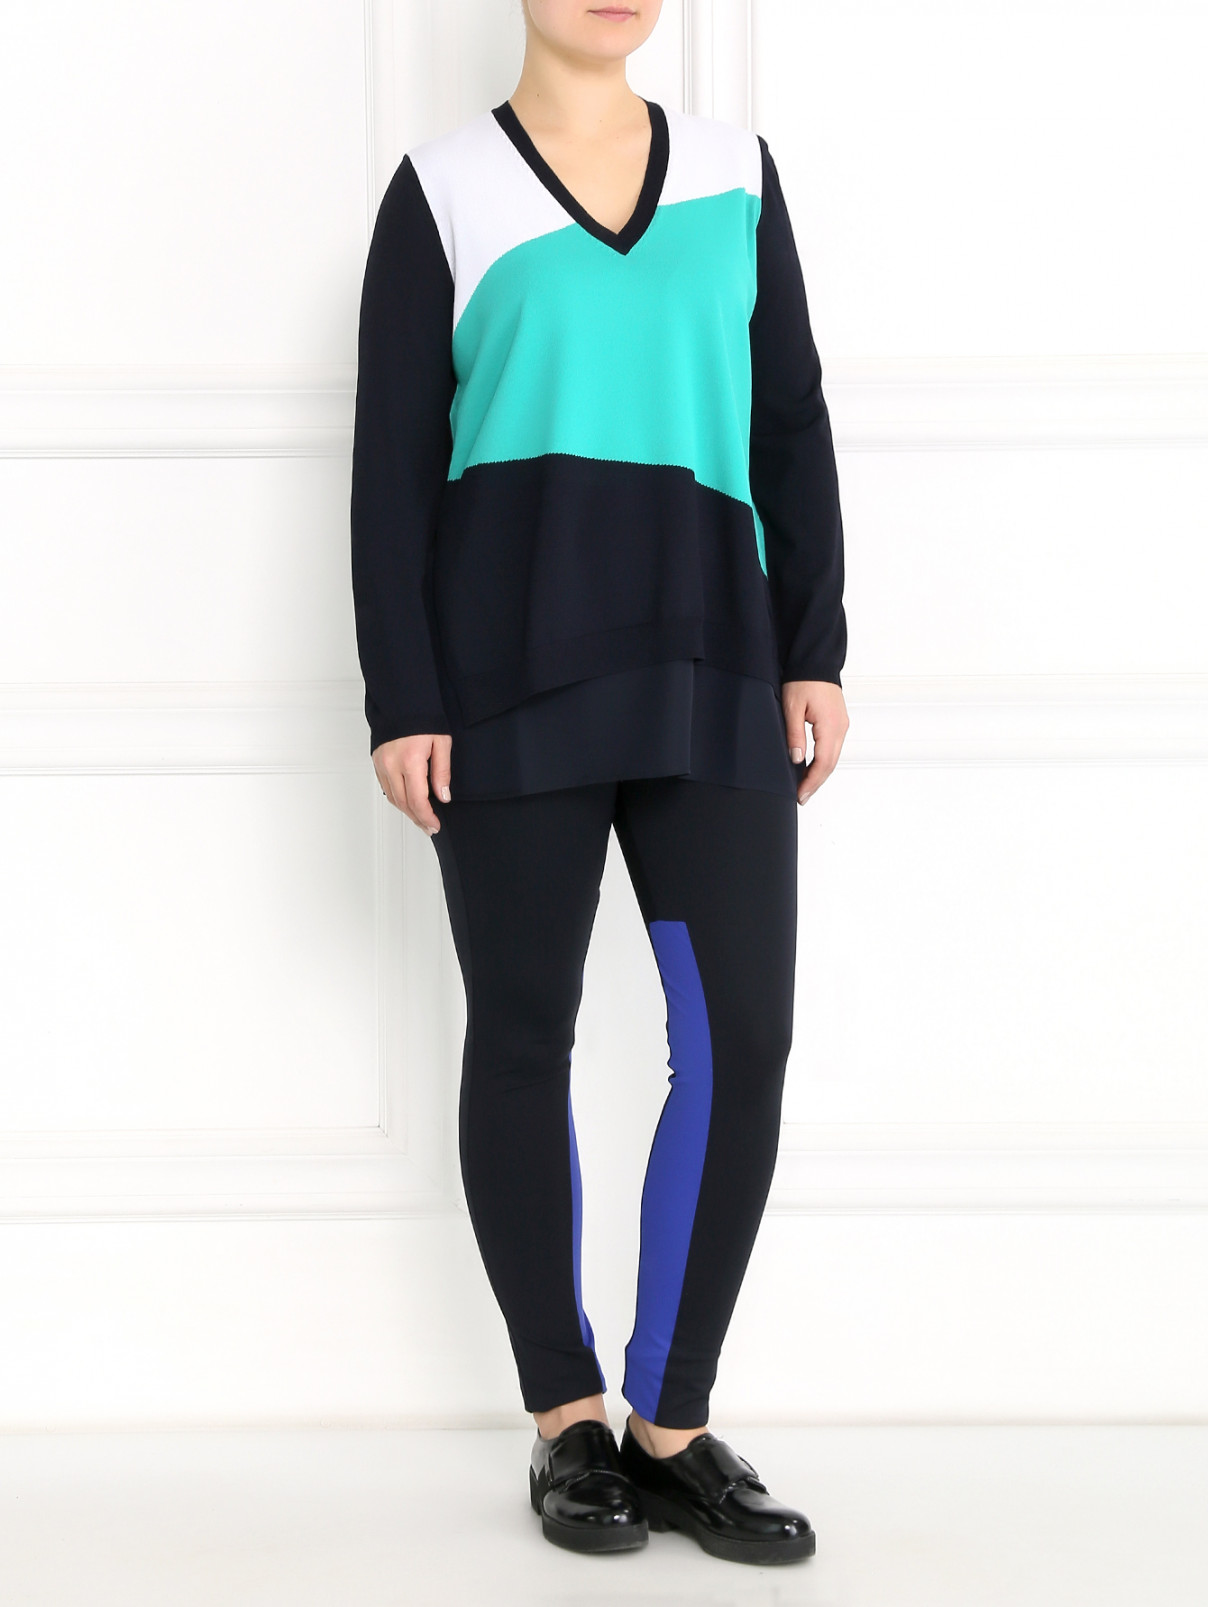 Трикотажные брюки на резинке с контрастными вставками Voyage by Marina Rinaldi  –  Модель Общий вид  – Цвет:  Синий